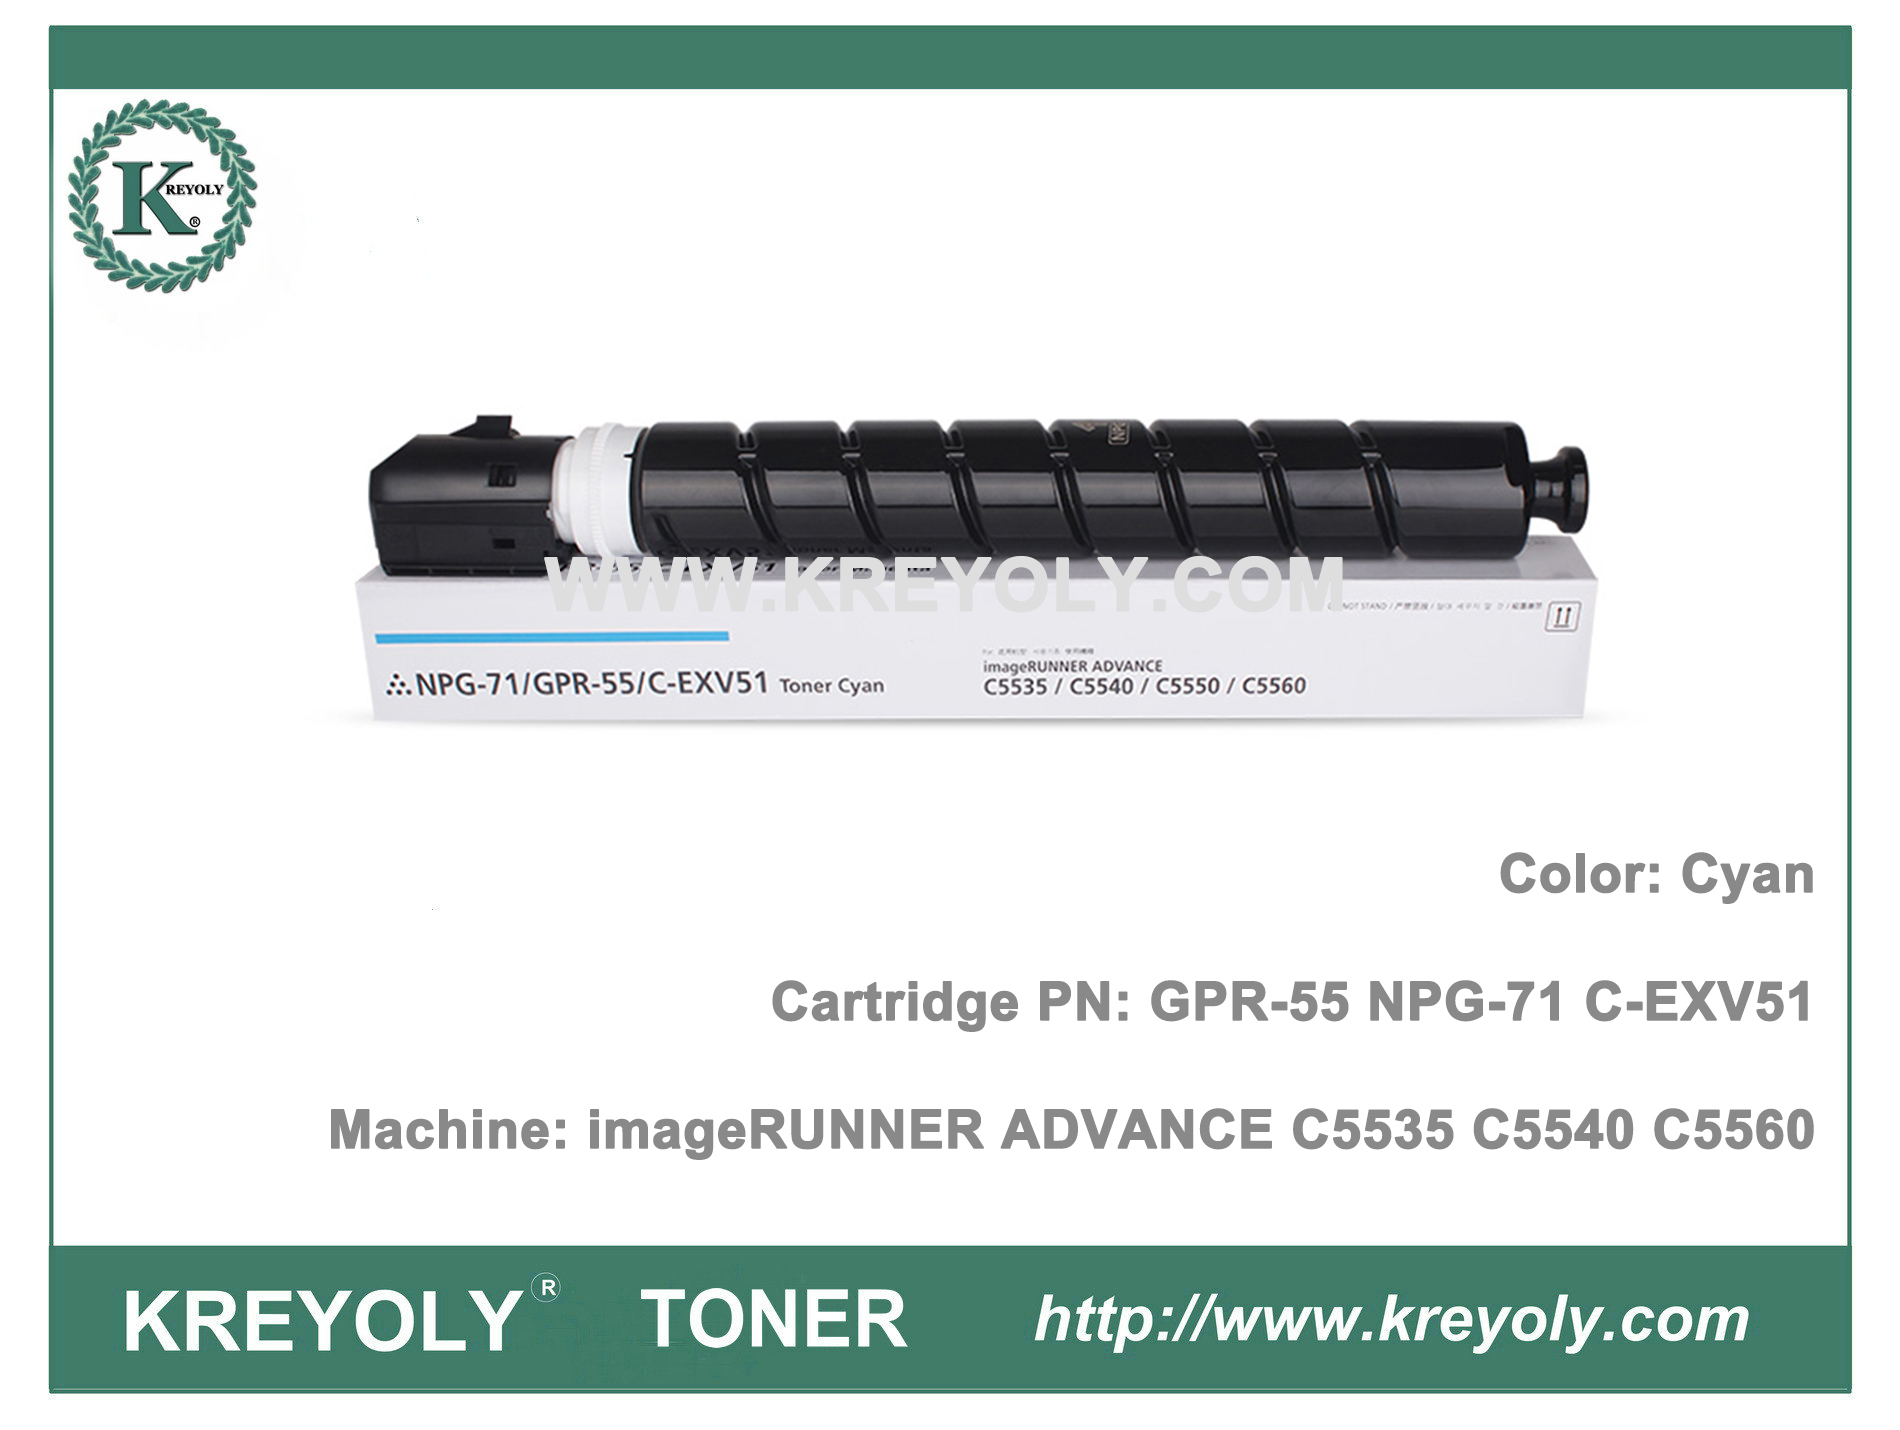 Cartouche de toner NPG71 GPR55 C-EXV51 pour imageRunner ADVANCE C5560 C5550 C5540 C5535